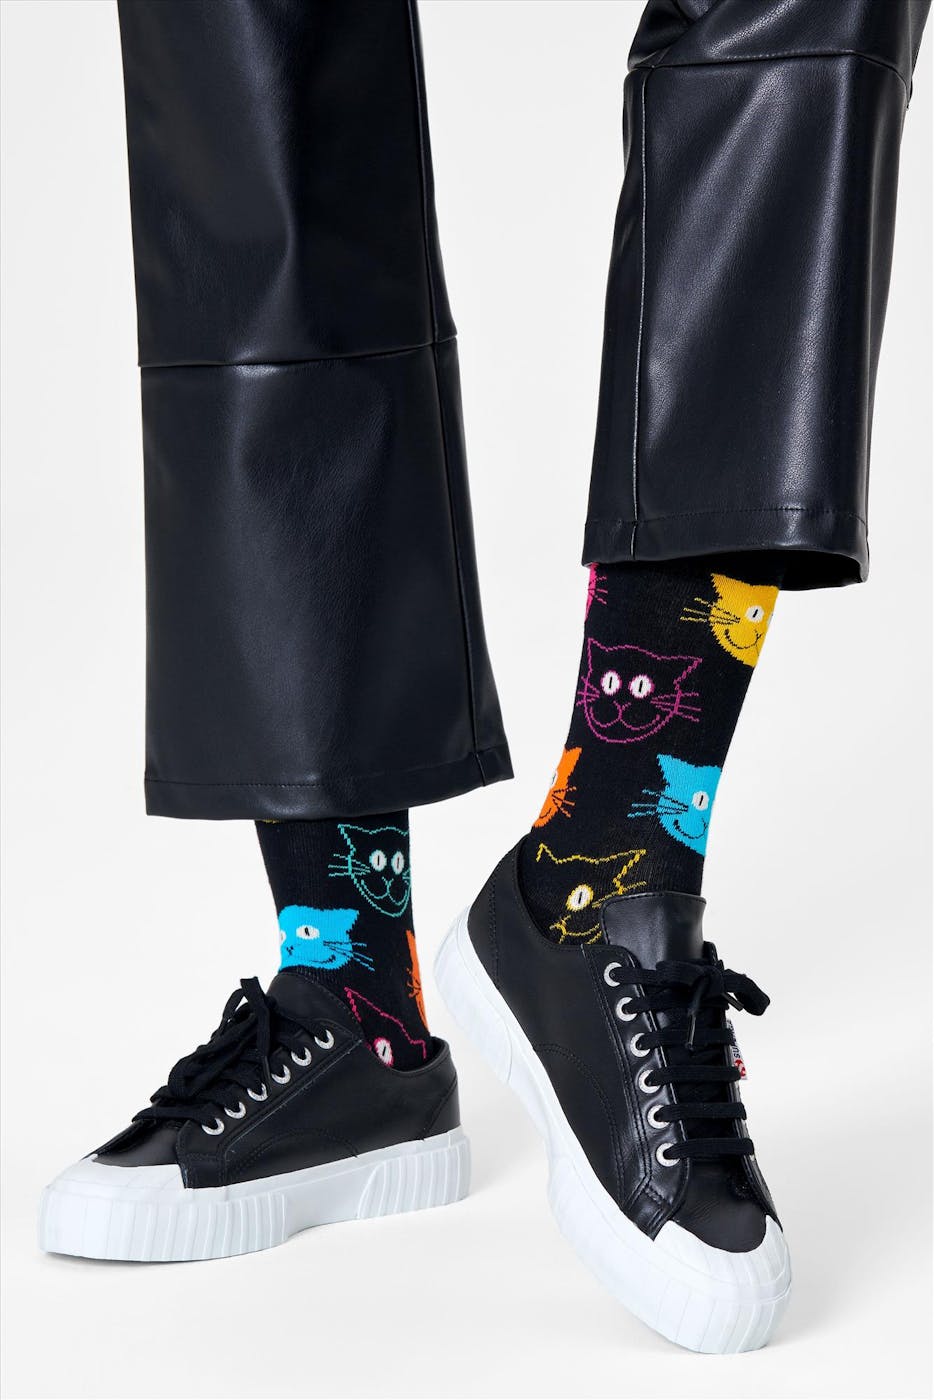 Happy Socks - Zwarte-multicolour Cat sokken, maat: 41-46